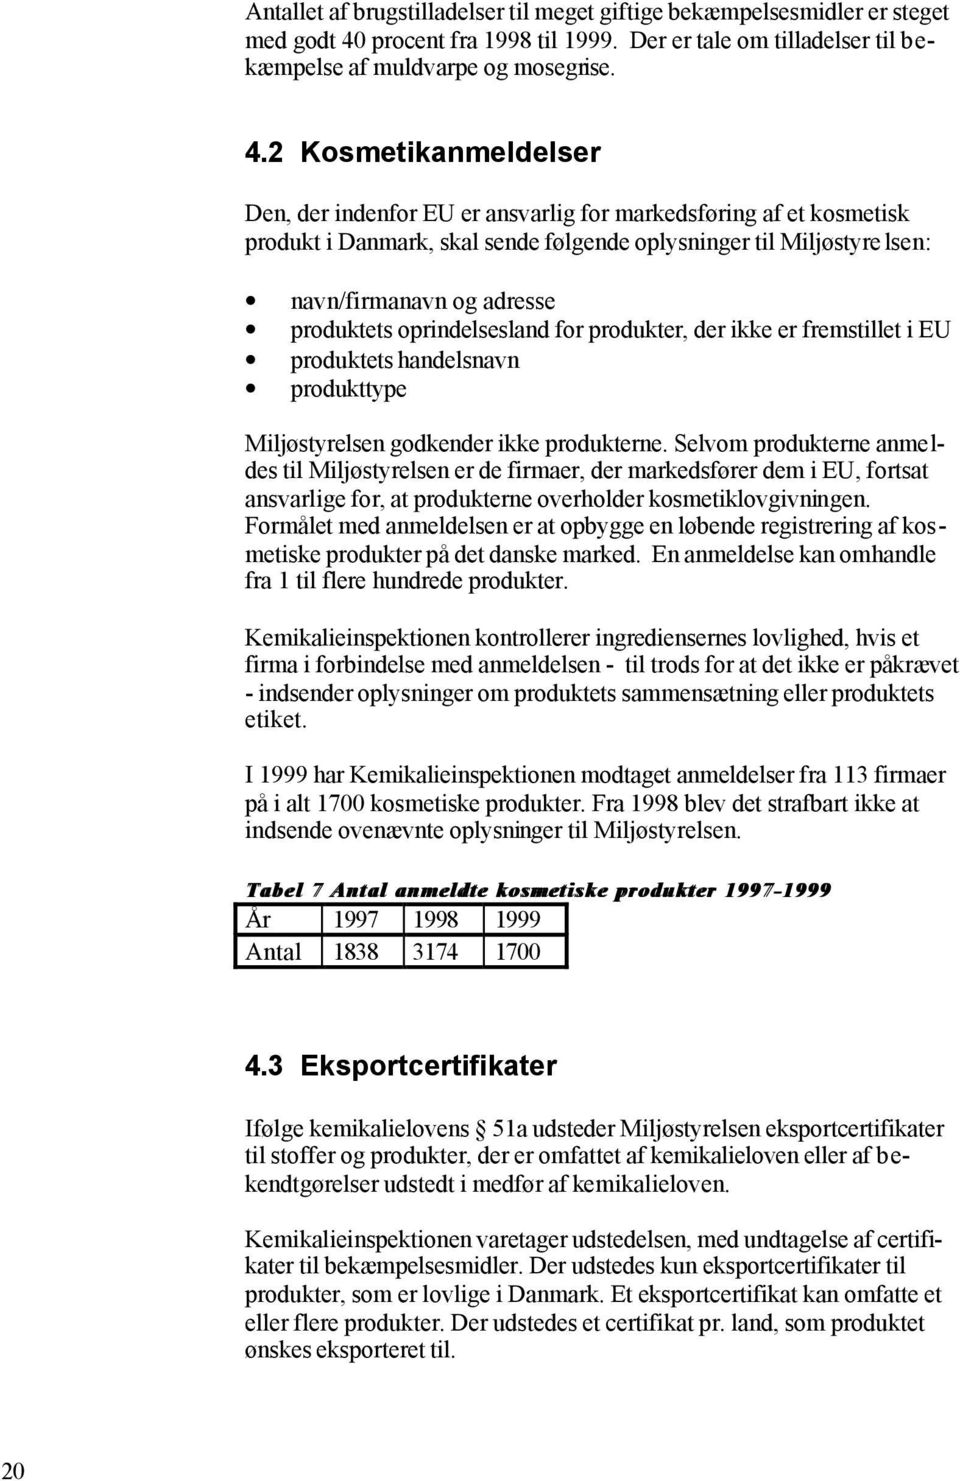 2 Kosmetikanmeldelser Den, der indenfor EU er ansvarlig for markedsføring af et kosmetisk produkt i Danmark, skal sende følgende oplysninger til Miljøstyre lsen: navn/firmanavn og adresse produktets